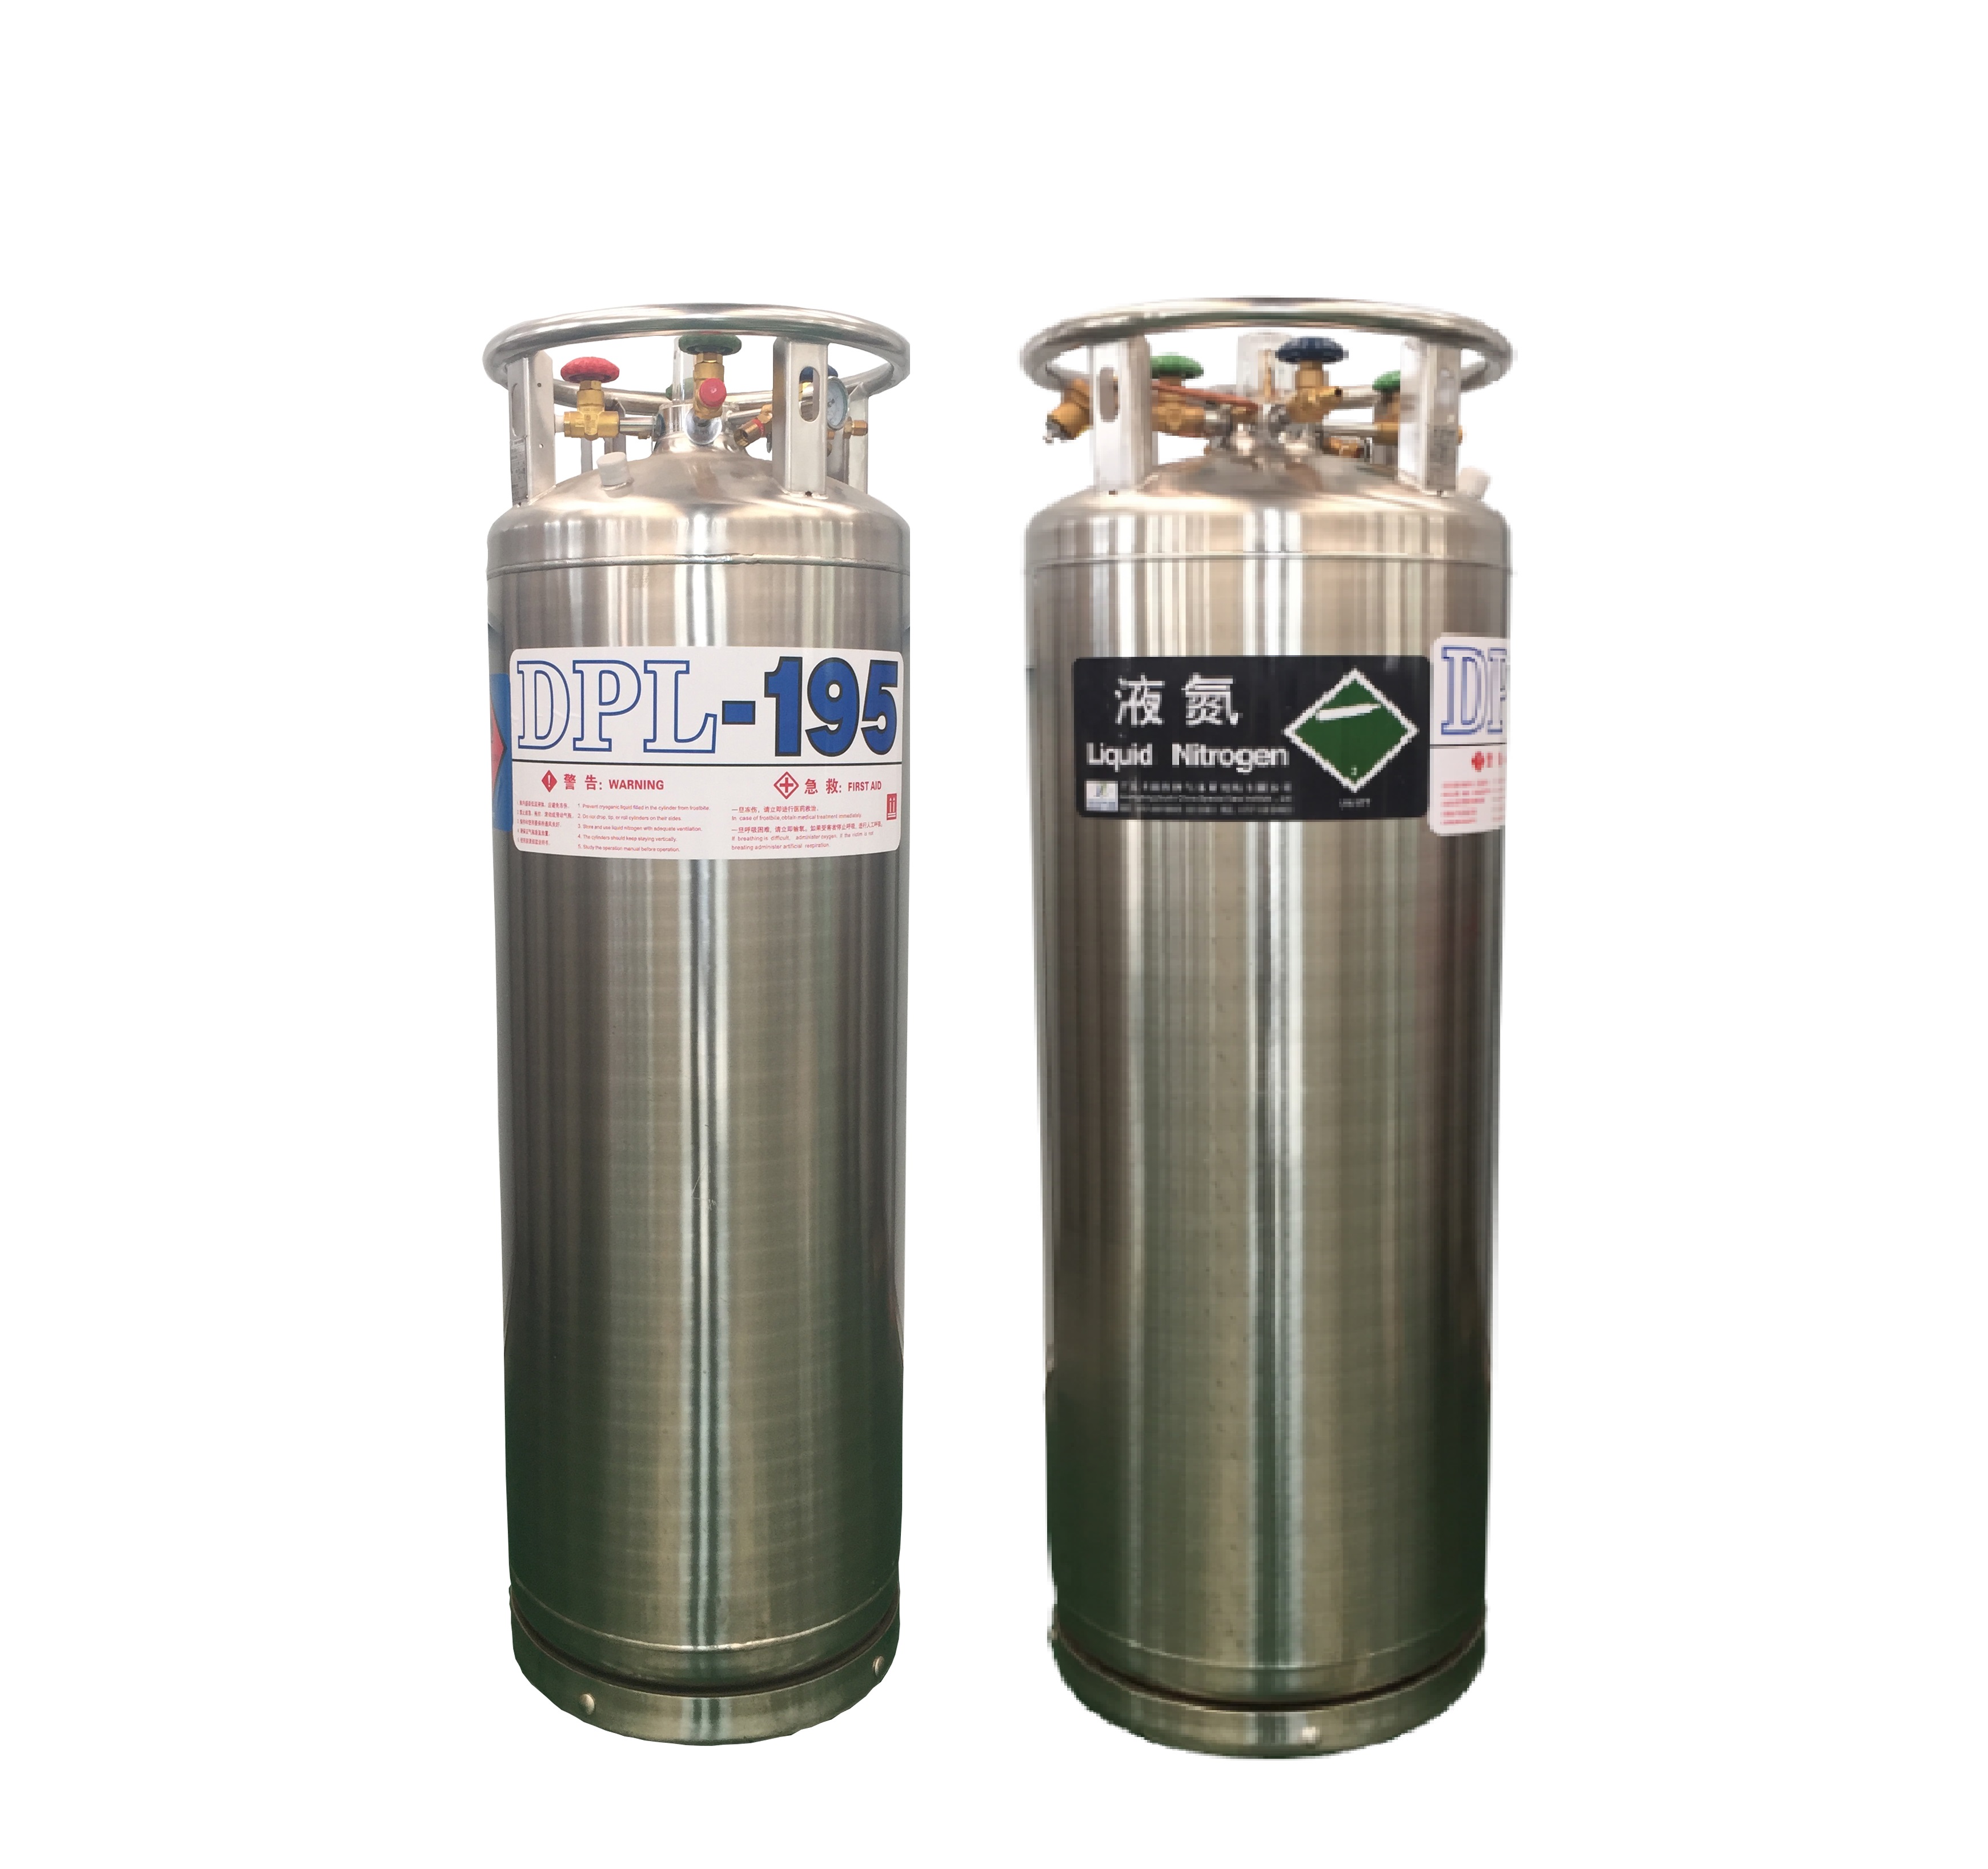 液氮|杜瓦罐液氮|便携式液氮